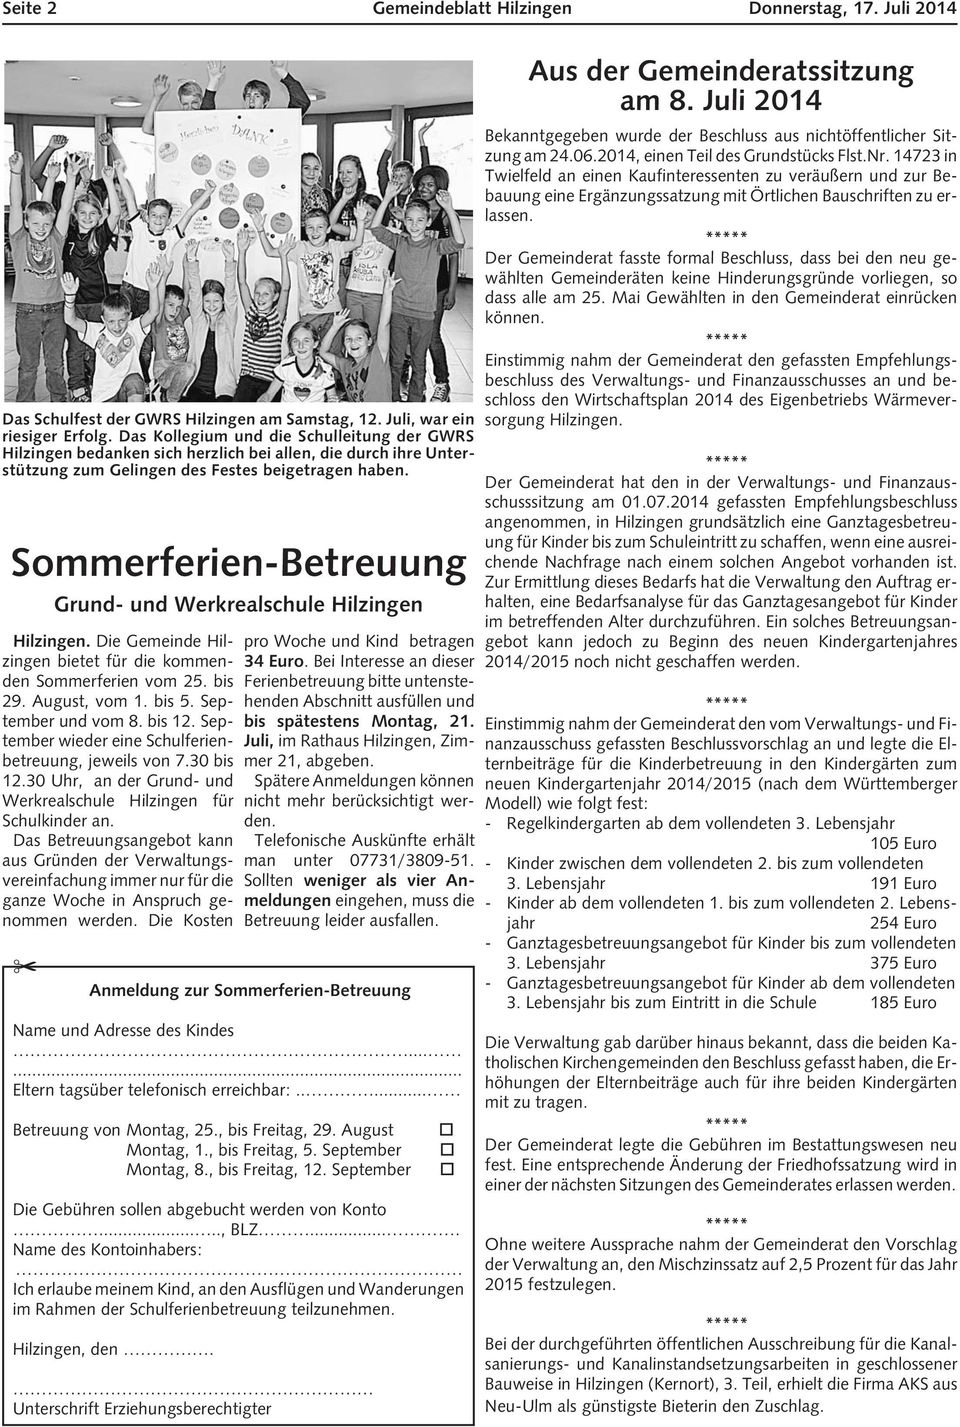 Sommerferien-Betreuung Grund- und Werkrealschule Hilzingen Hilzingen. Die Gemeinde Hilzingen bietet für die kommenden Sommerferien vom 25. bis 29. August, vom 1. bis 5. September und vom 8. bis 12.